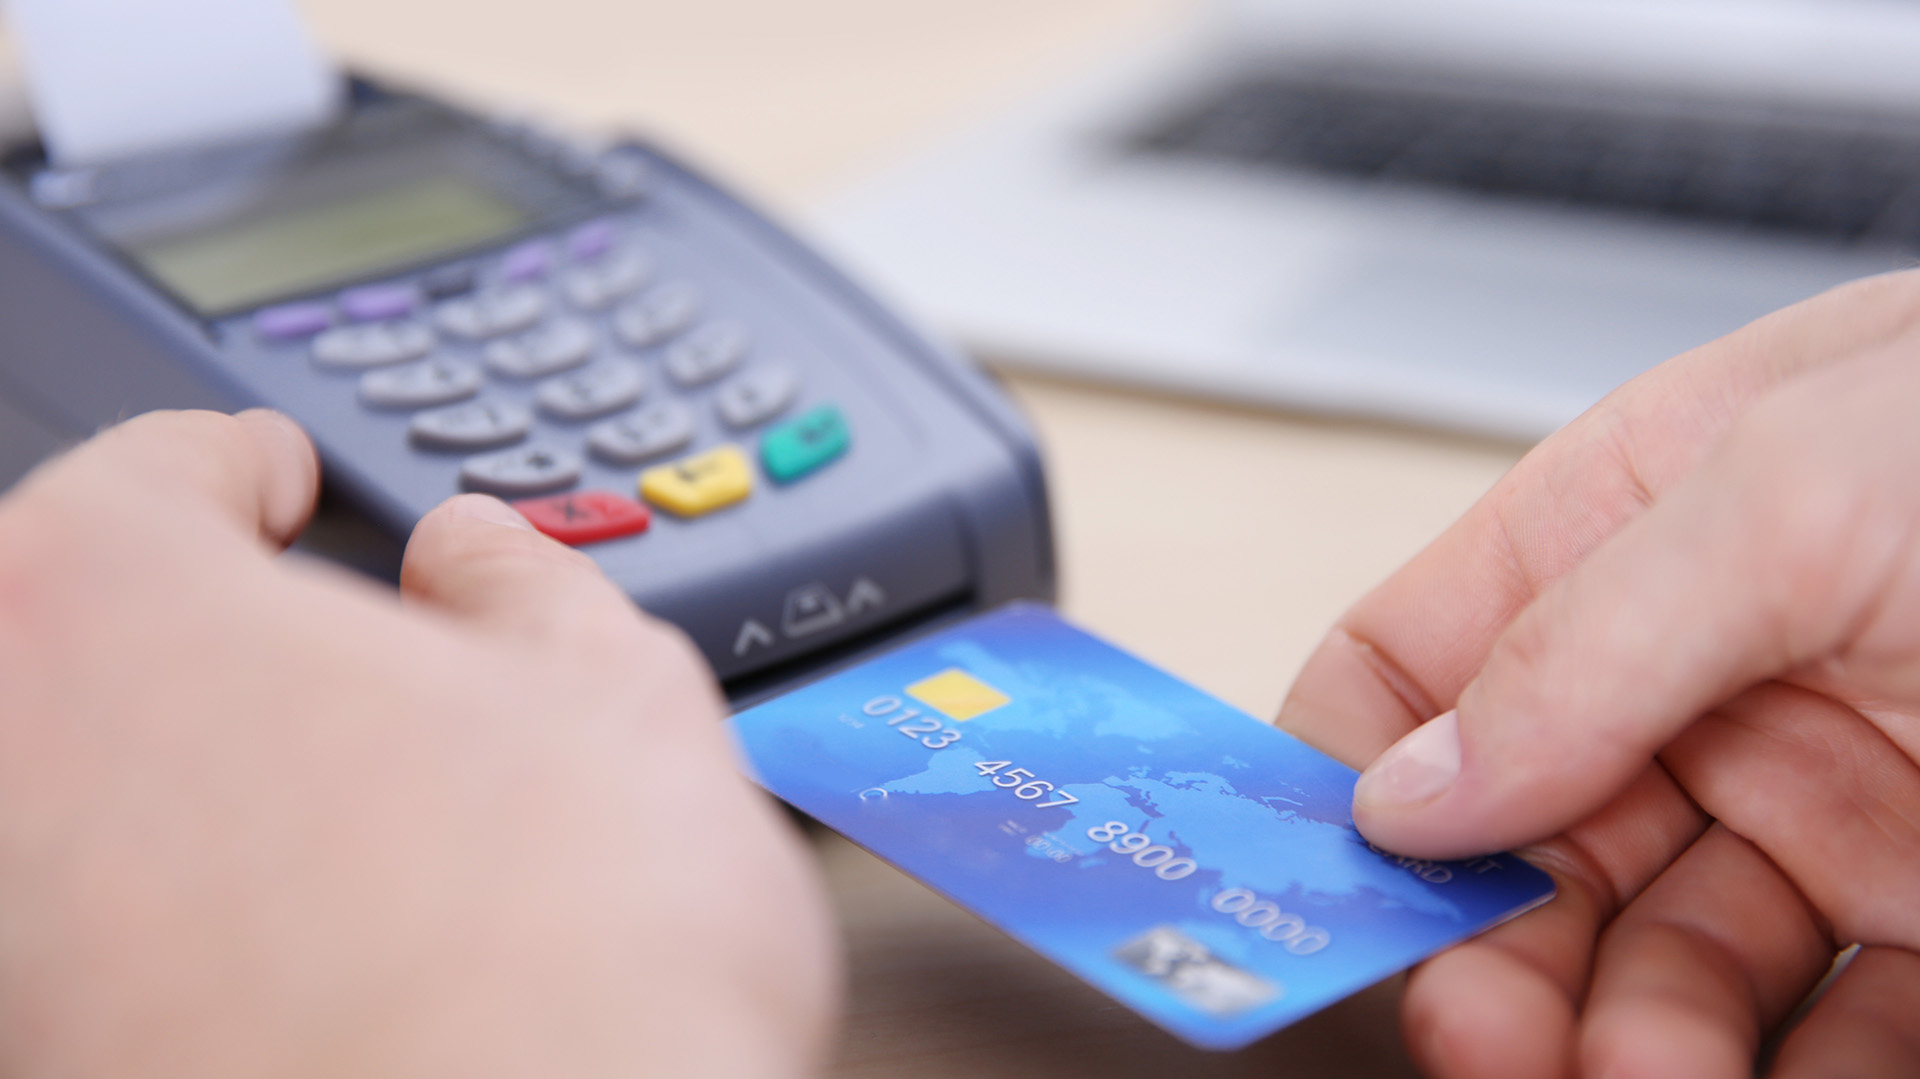 AFIP monitorea los pagos con tarjetas: hasta cuánto se puede gastar sin controles y por qué no se va a actualizar la cifra